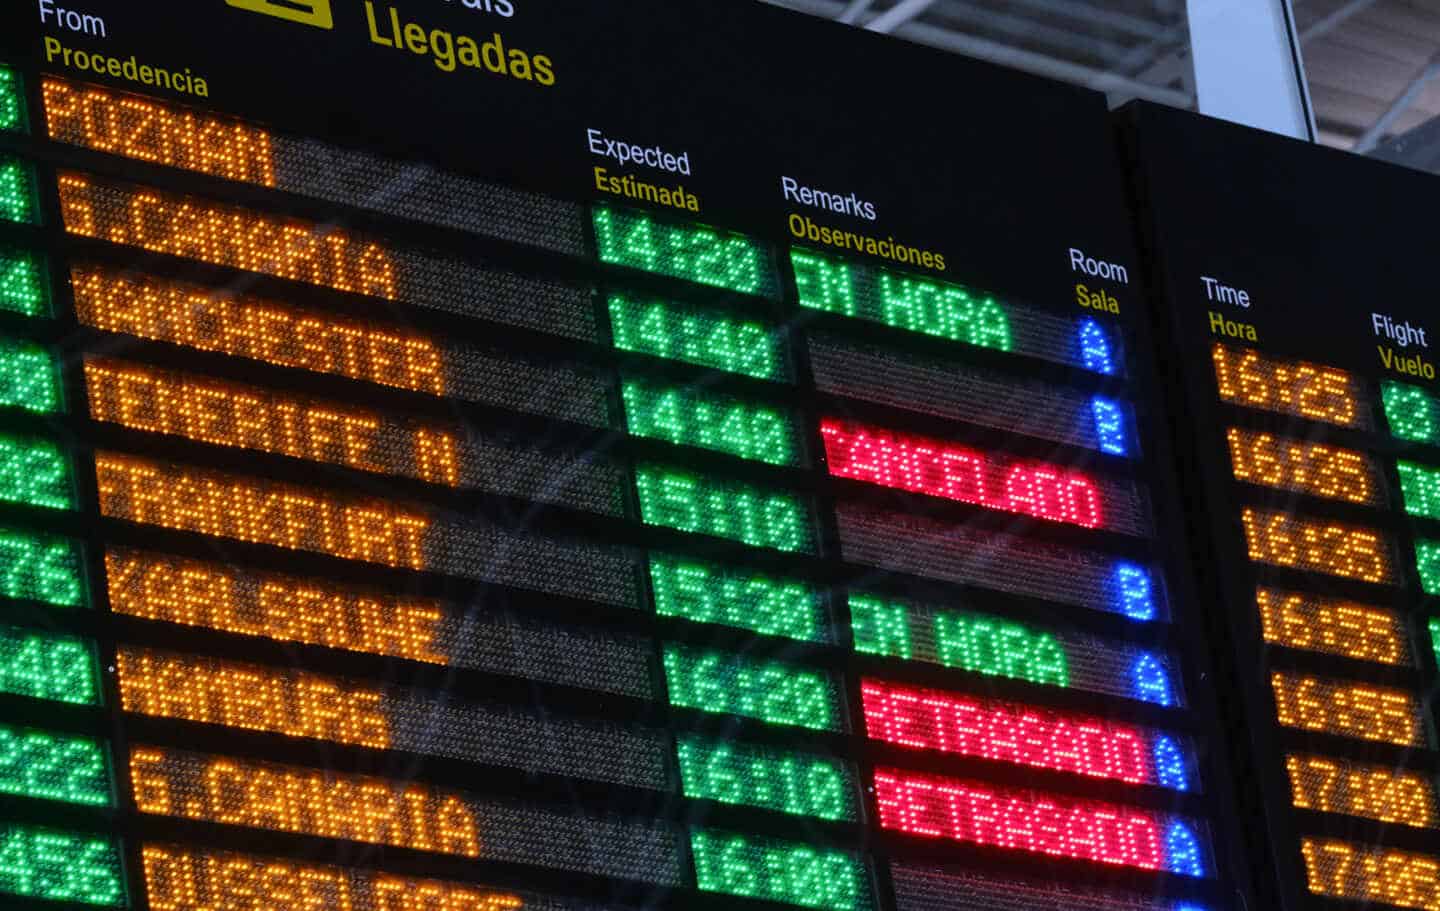 Paneles luminosos con rótulos de vuelos cancelados o retrasados en el aeropuerto de Fuerteventura (Canarias).